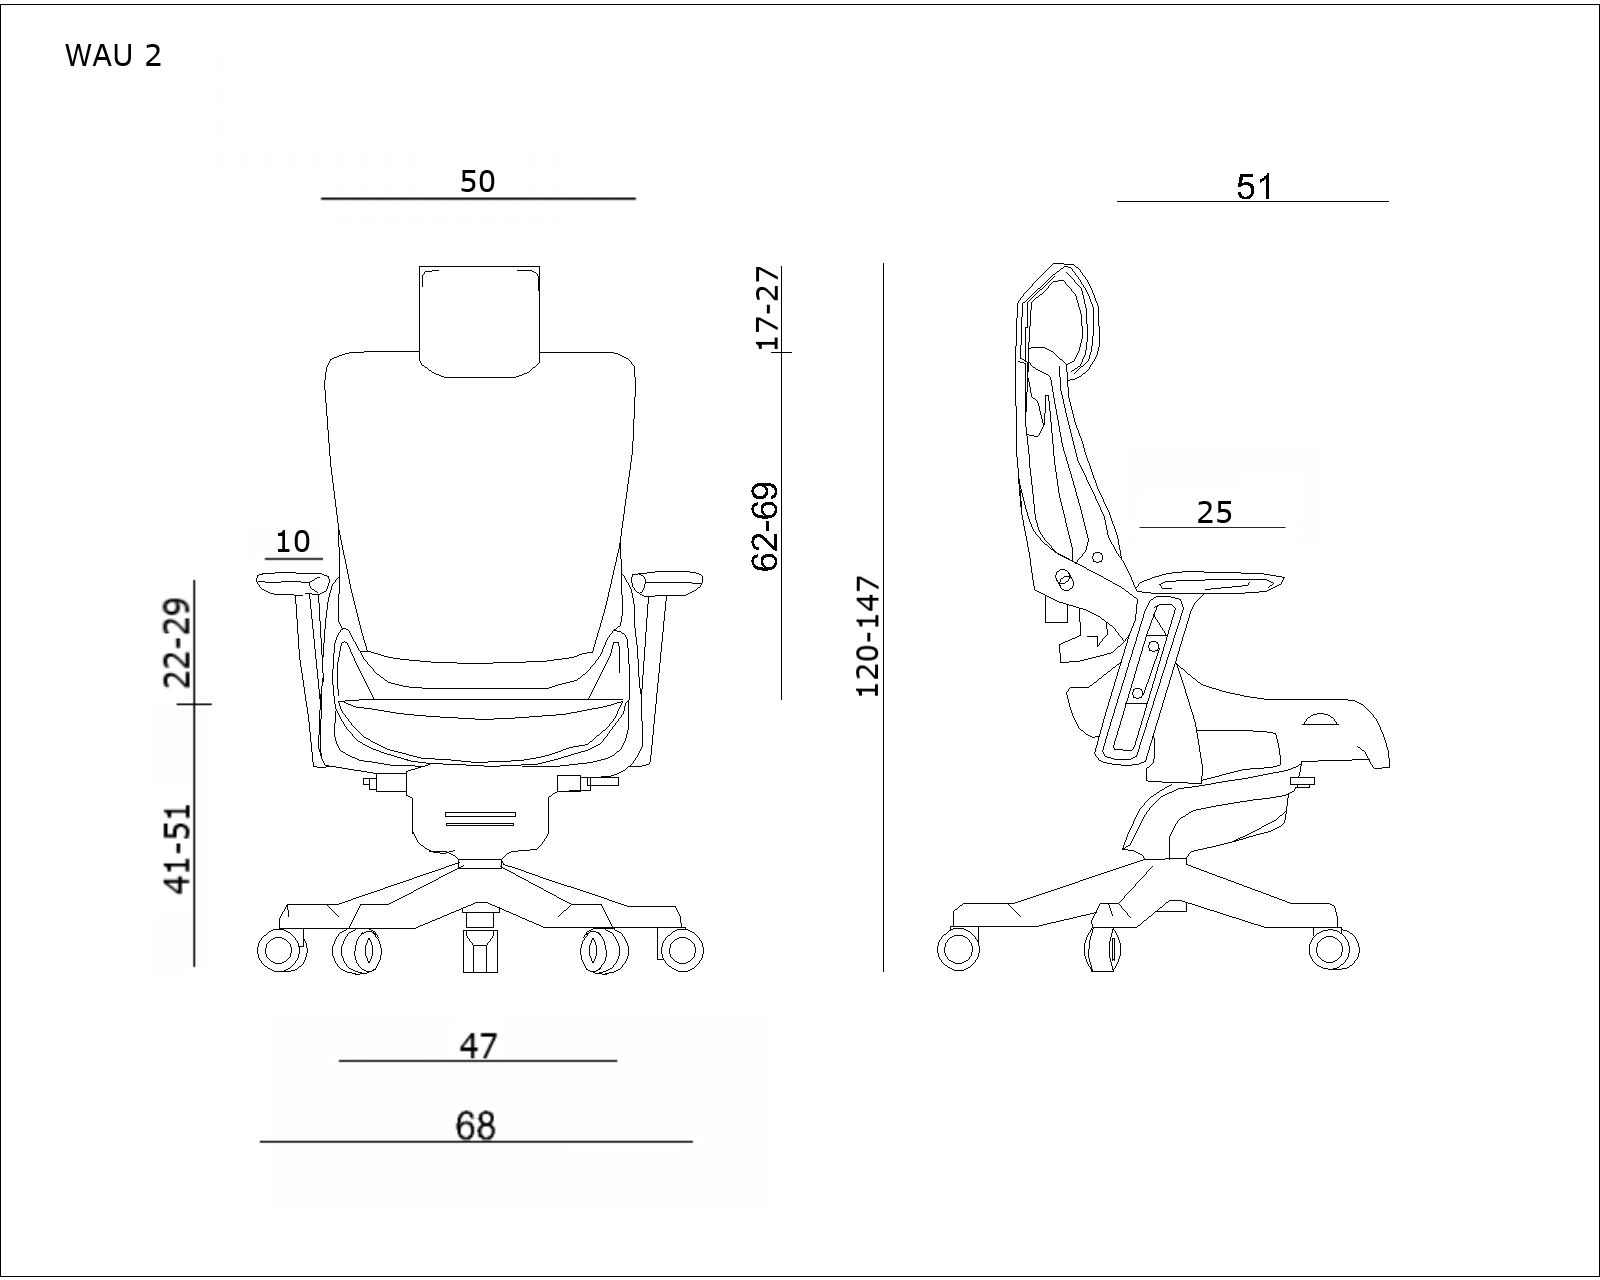 Scaun ergonomic de birou Mesh - confort, durabilitate și suport excelent pentru o poziție sănătoasă la birou, WAN